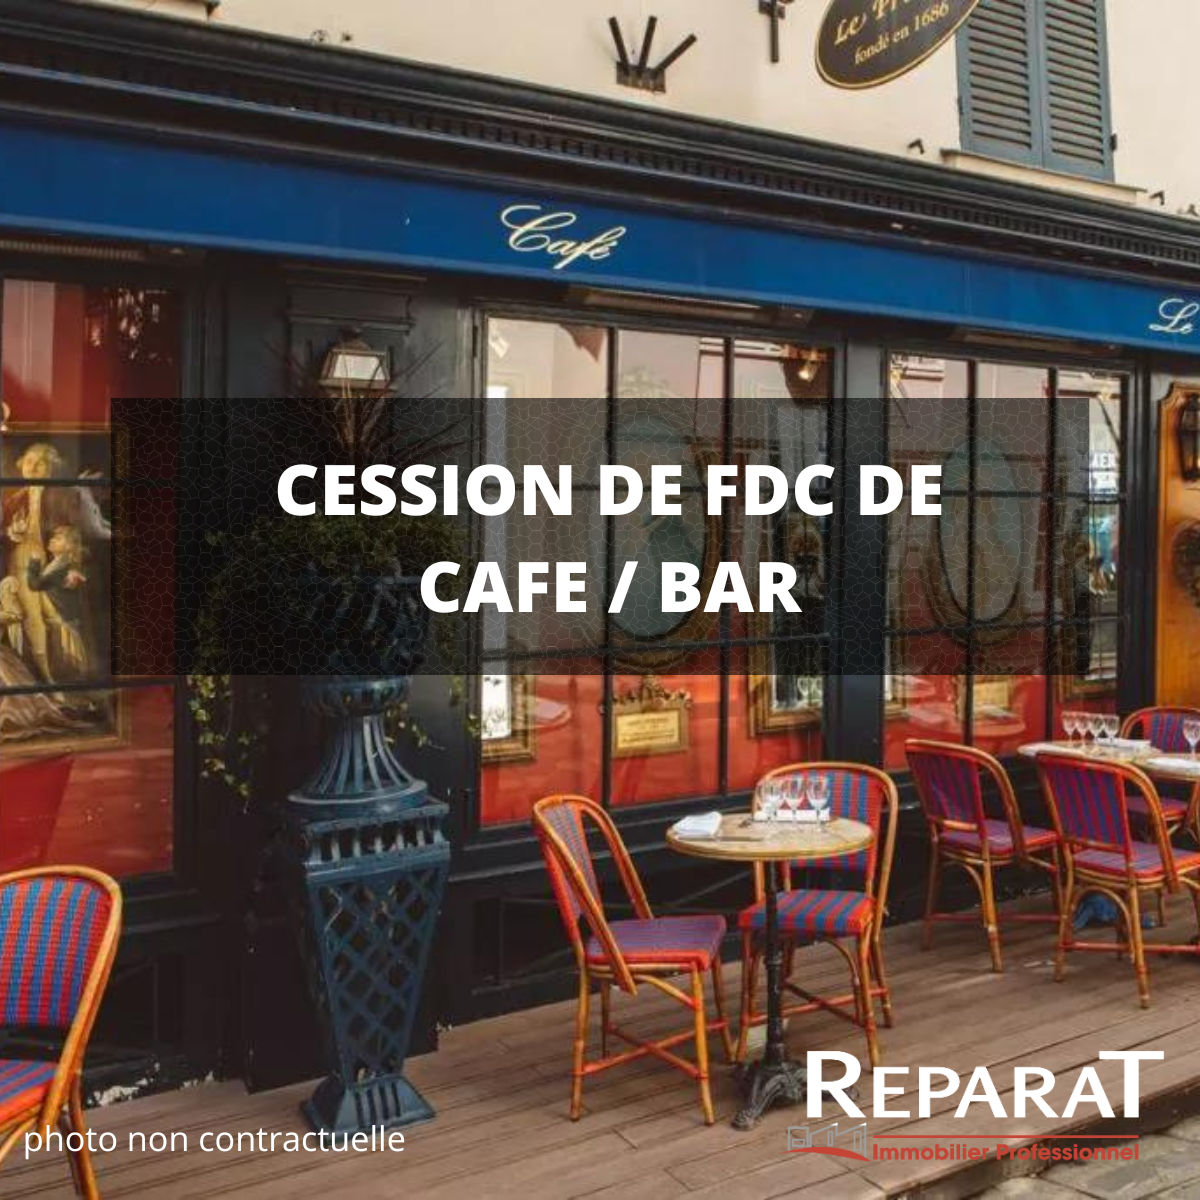 A vendre FDC café bar à Brive la Gaillarde